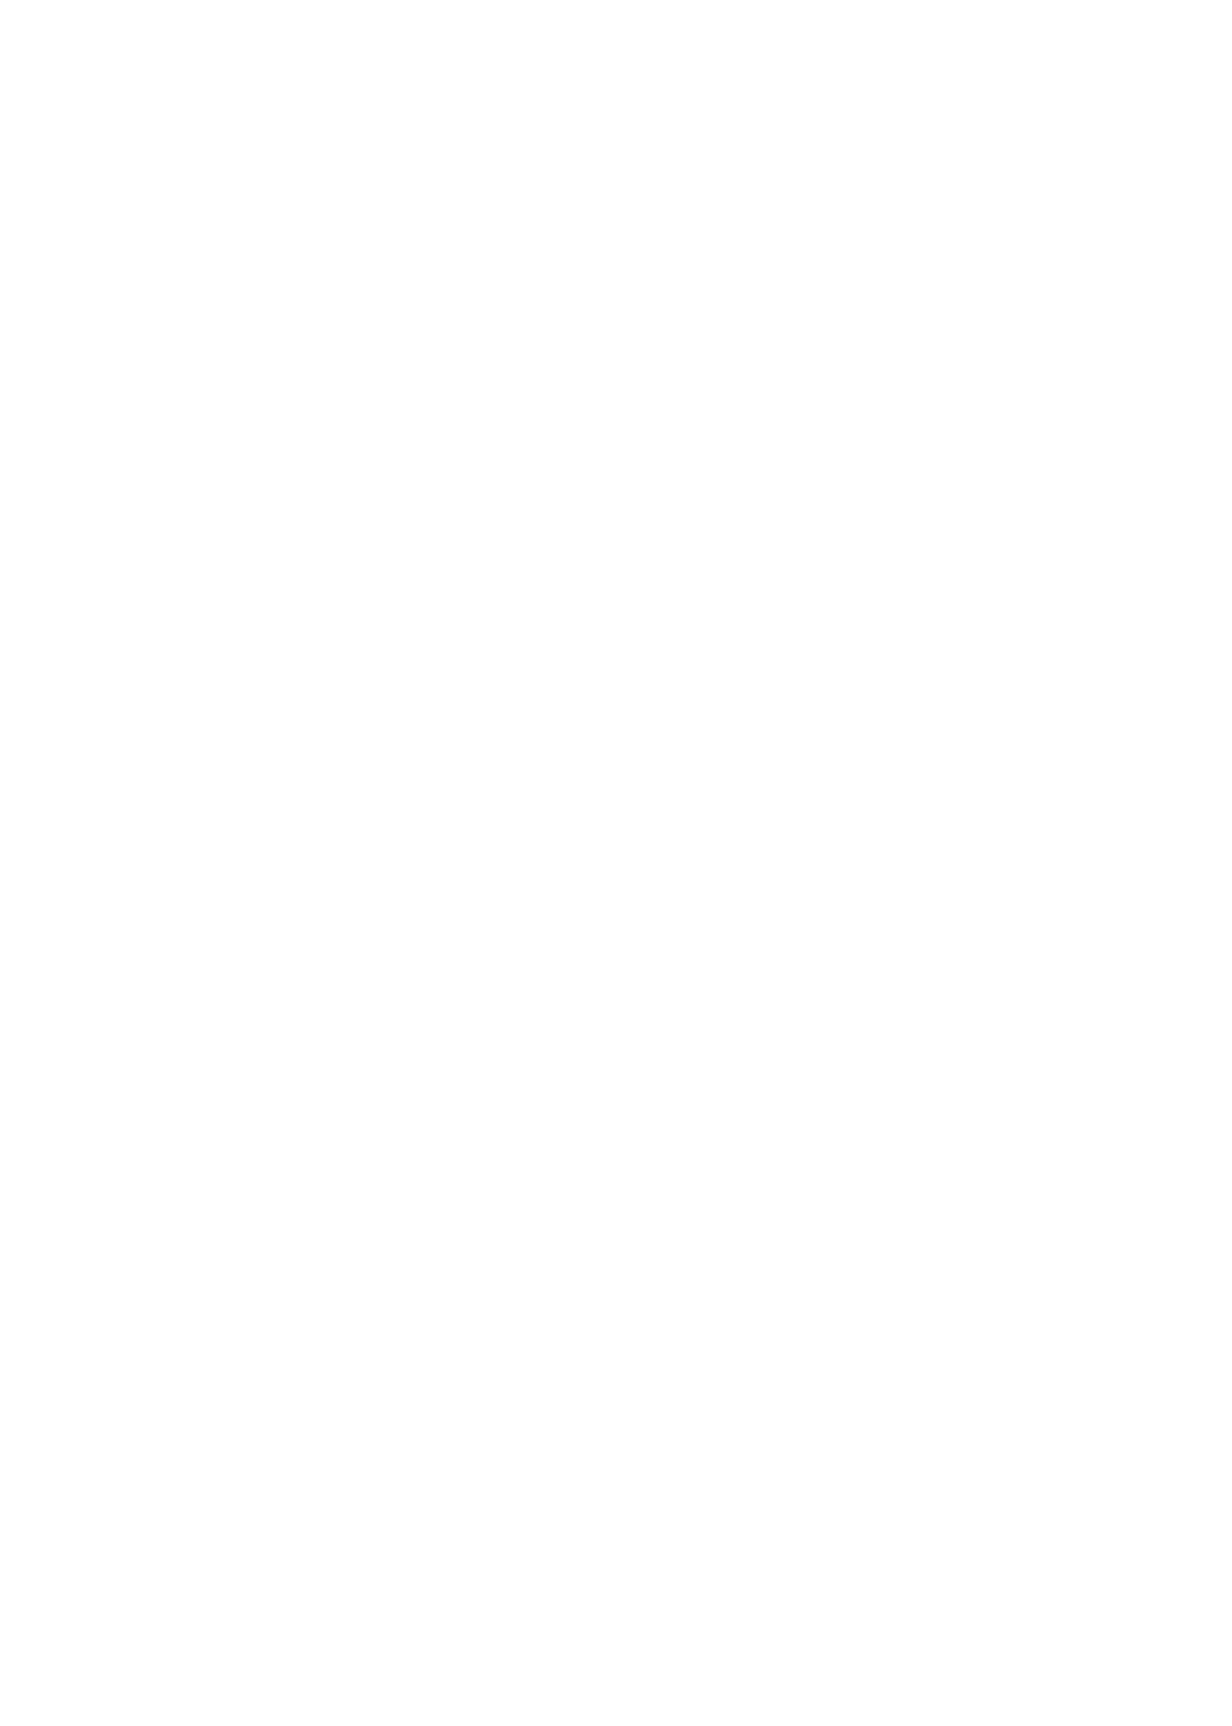 Hello Trails